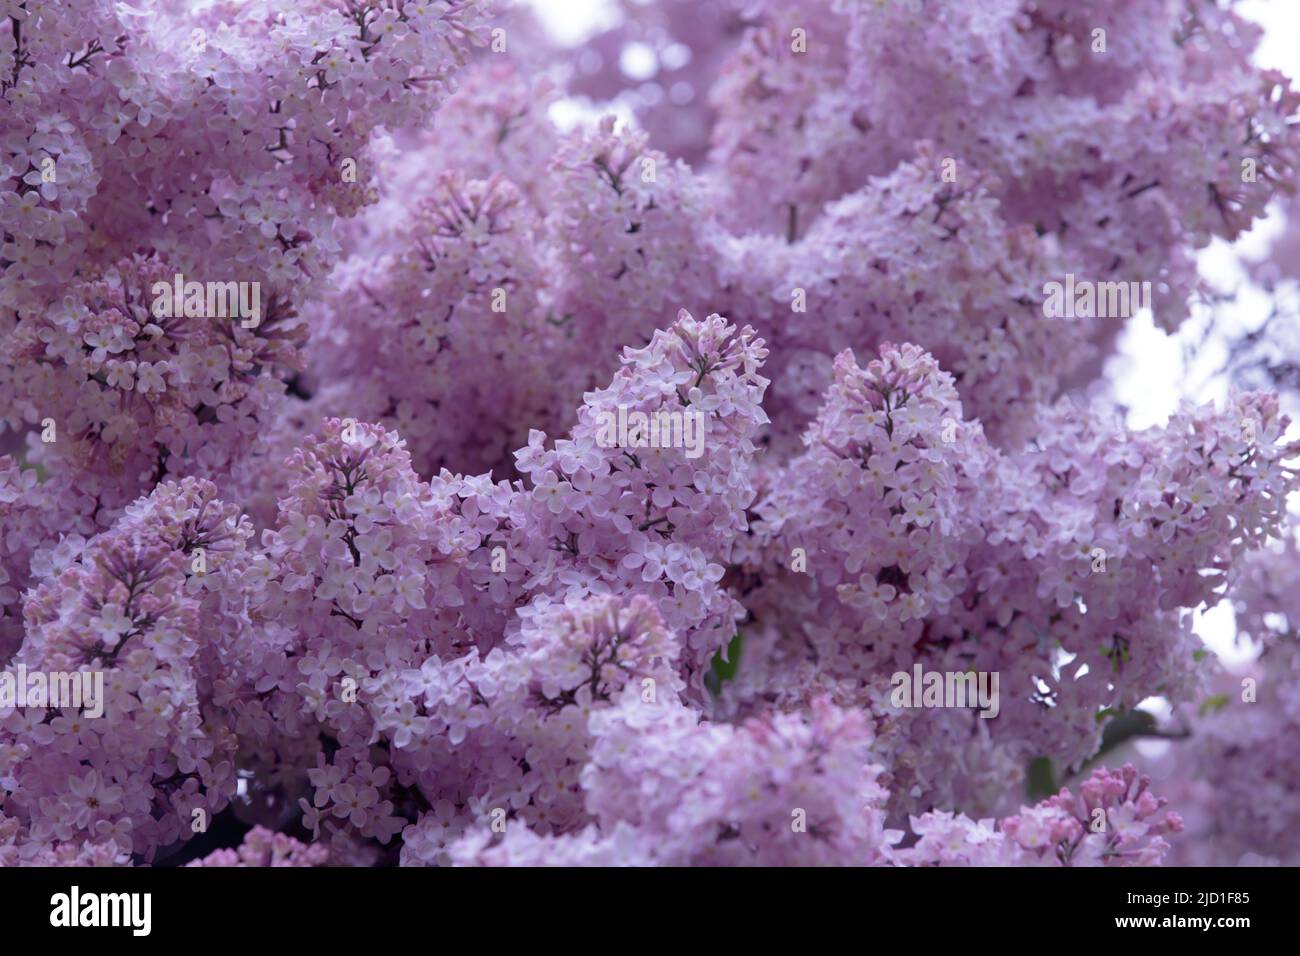 Fliederblüten. Lila und rosa Blütentrauben blühender Flieder an den Zweigen der Büsche. Blühender Fliedergarten Stockfoto